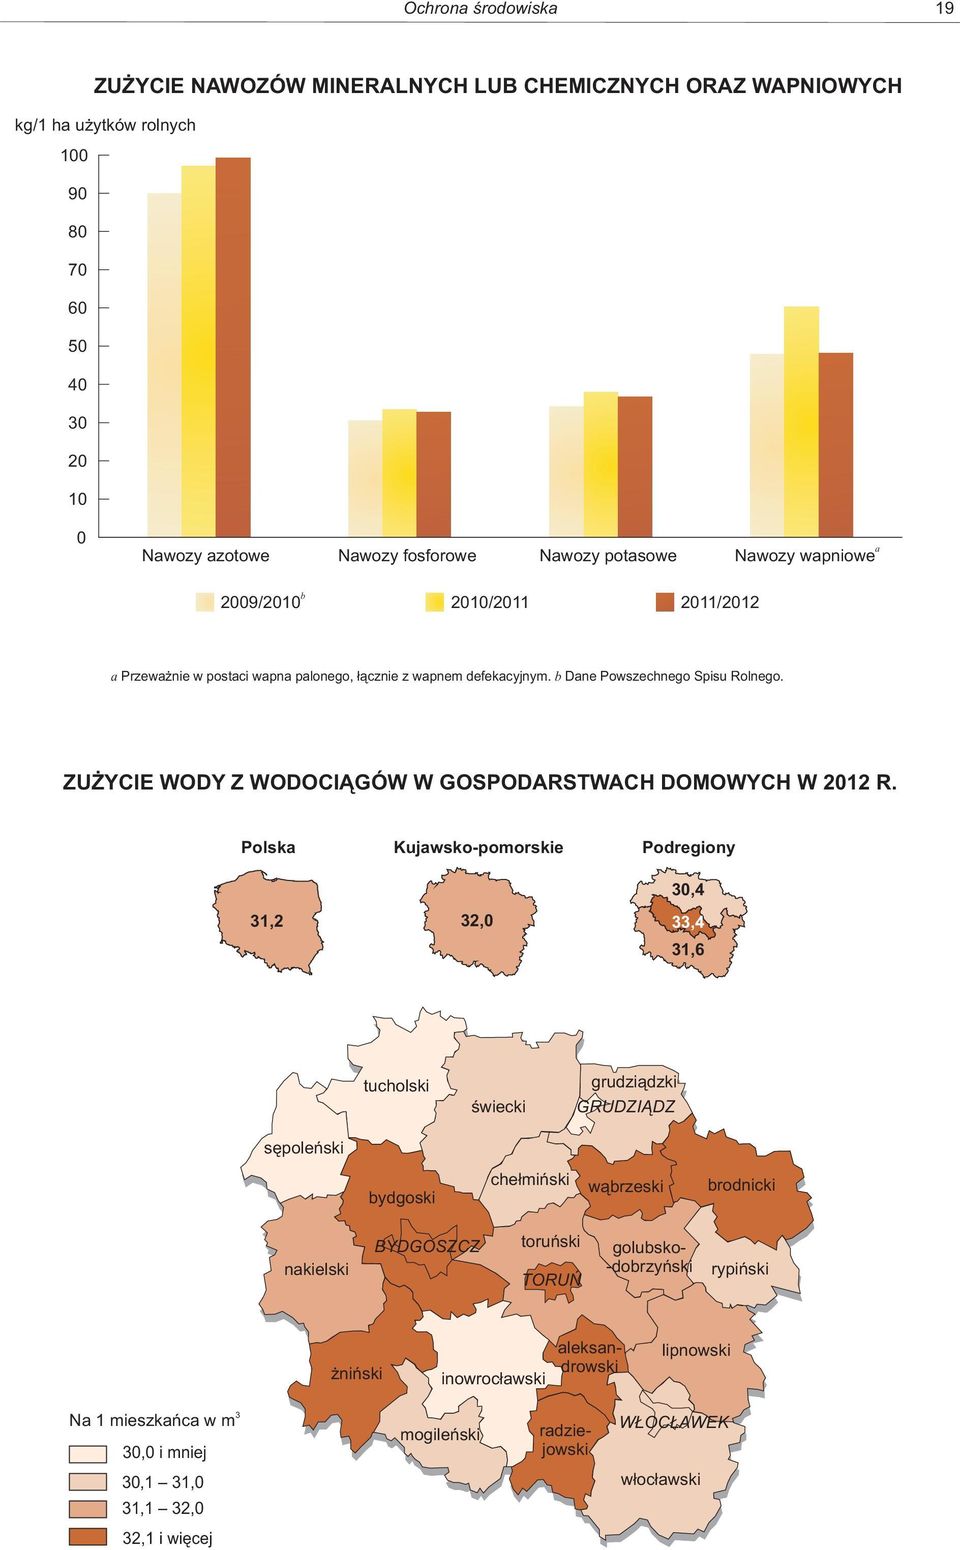 ZUŻYCIE WODY Z WODOCIĄGÓW W GOSPODARSTWACH DOMOWYCH W 2012 R.